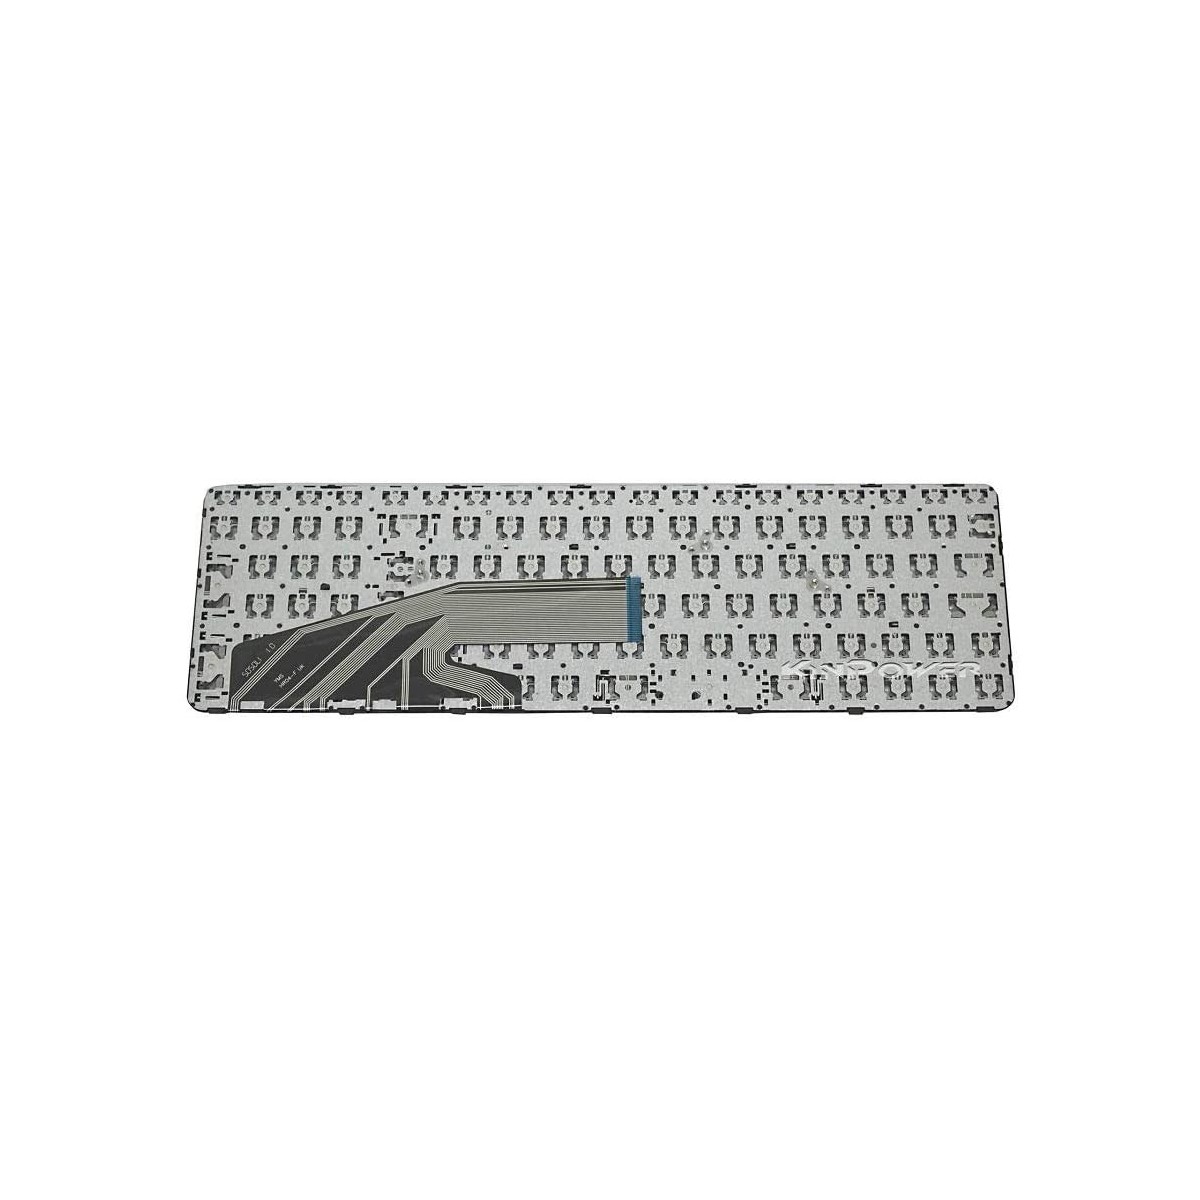 Clavier Français compatible Pour HP ProBook 455 G3 SERIES 6037B0113901